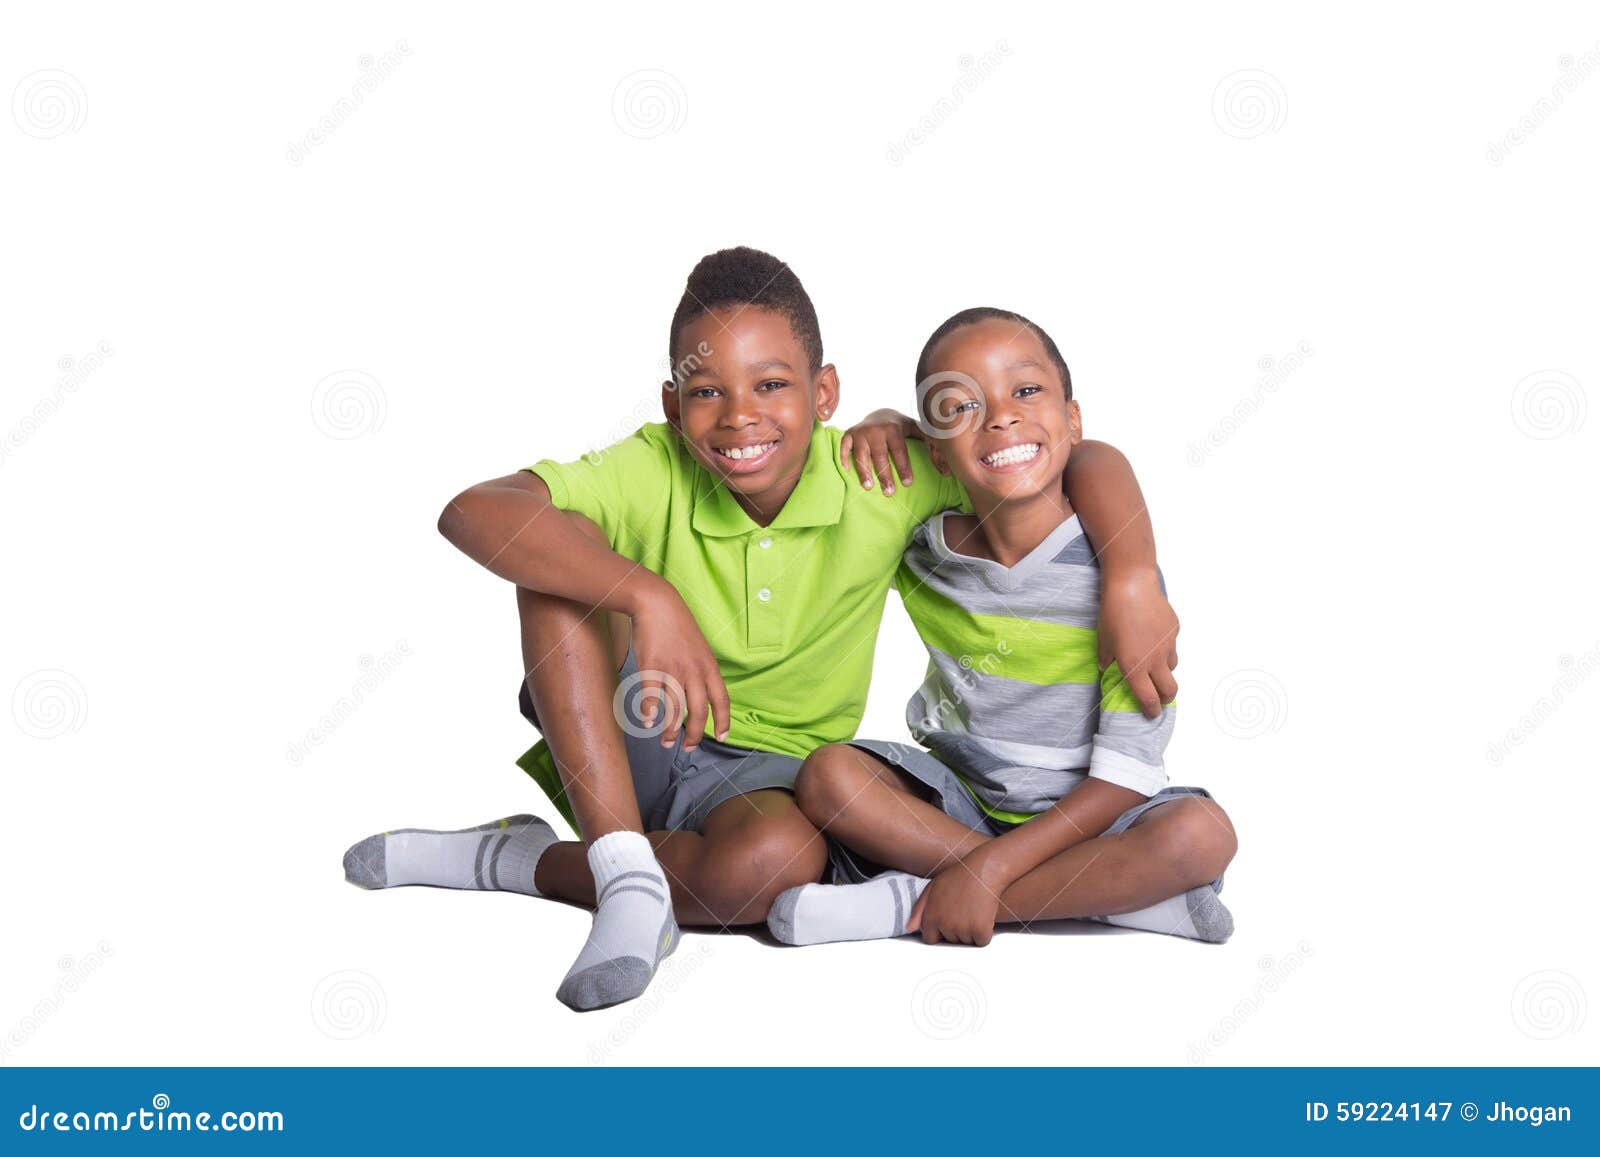 Passend Oranje vragen 2 broers stock afbeelding. Image of minderheid, gelukkig - 59224147